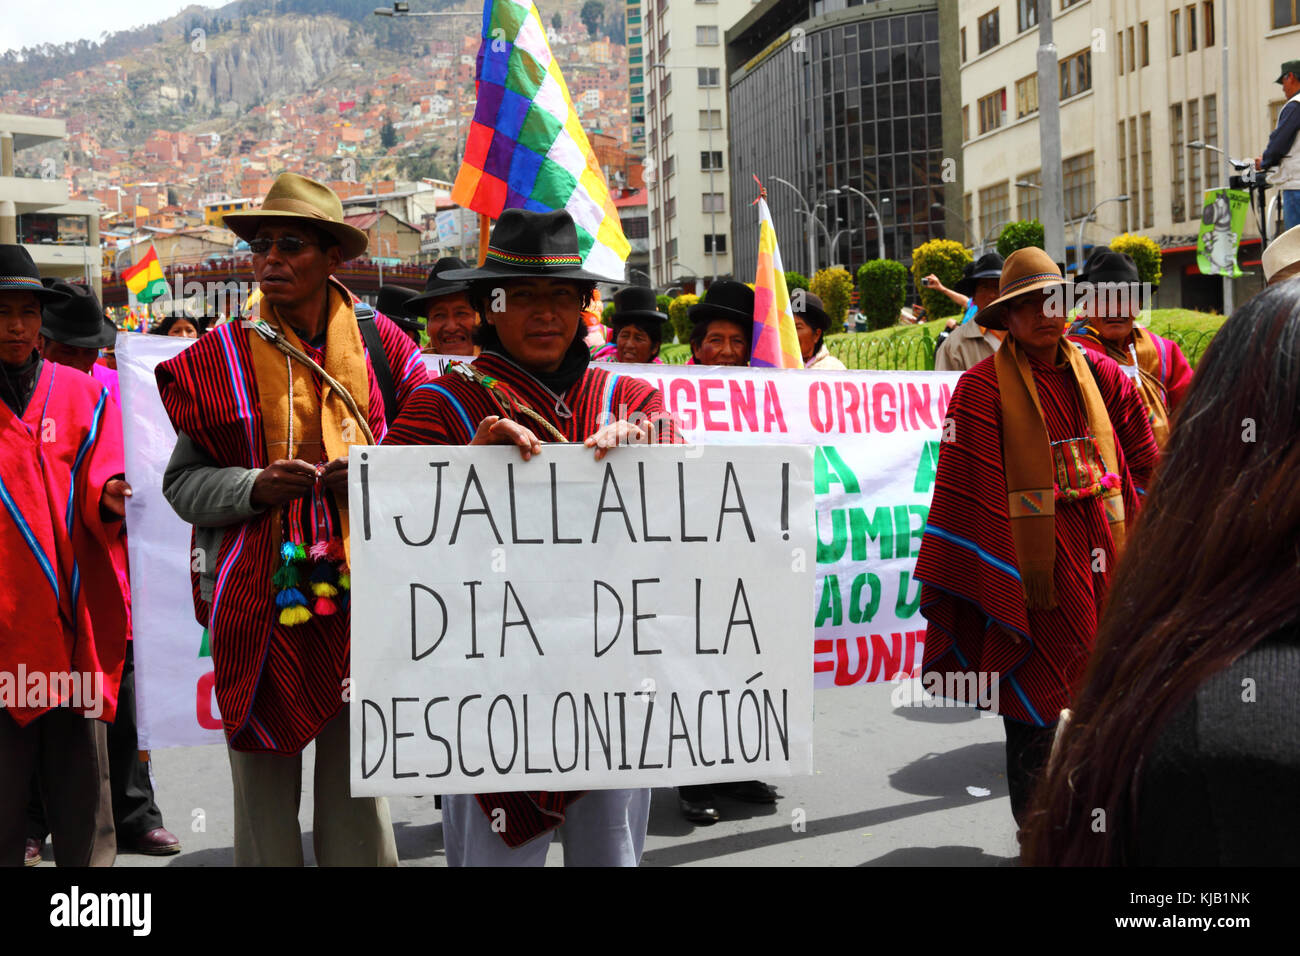 Les partisans du gouvernement de prendre part à un gouvernement pro soutenir mars prévoit de construire une route à travers la région TIPNIS, La Paz, Bolivie Banque D'Images